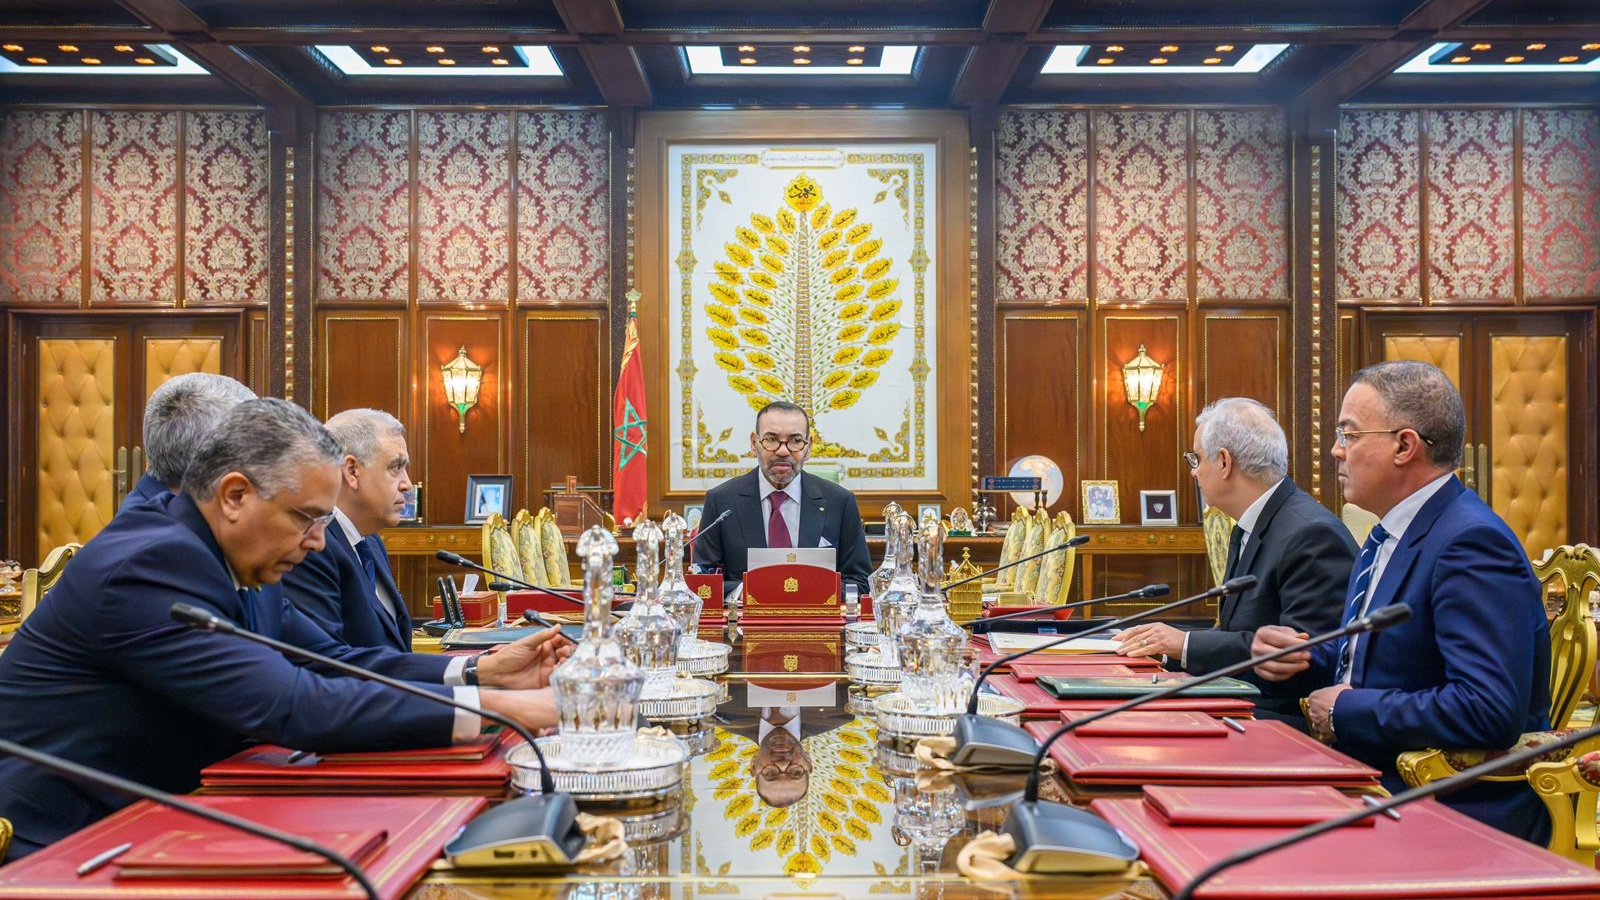 الملك محمد السادس لدى ترؤسه جلسة عمل في القصر الملكي بالرباط خصصت لأزمة الماء